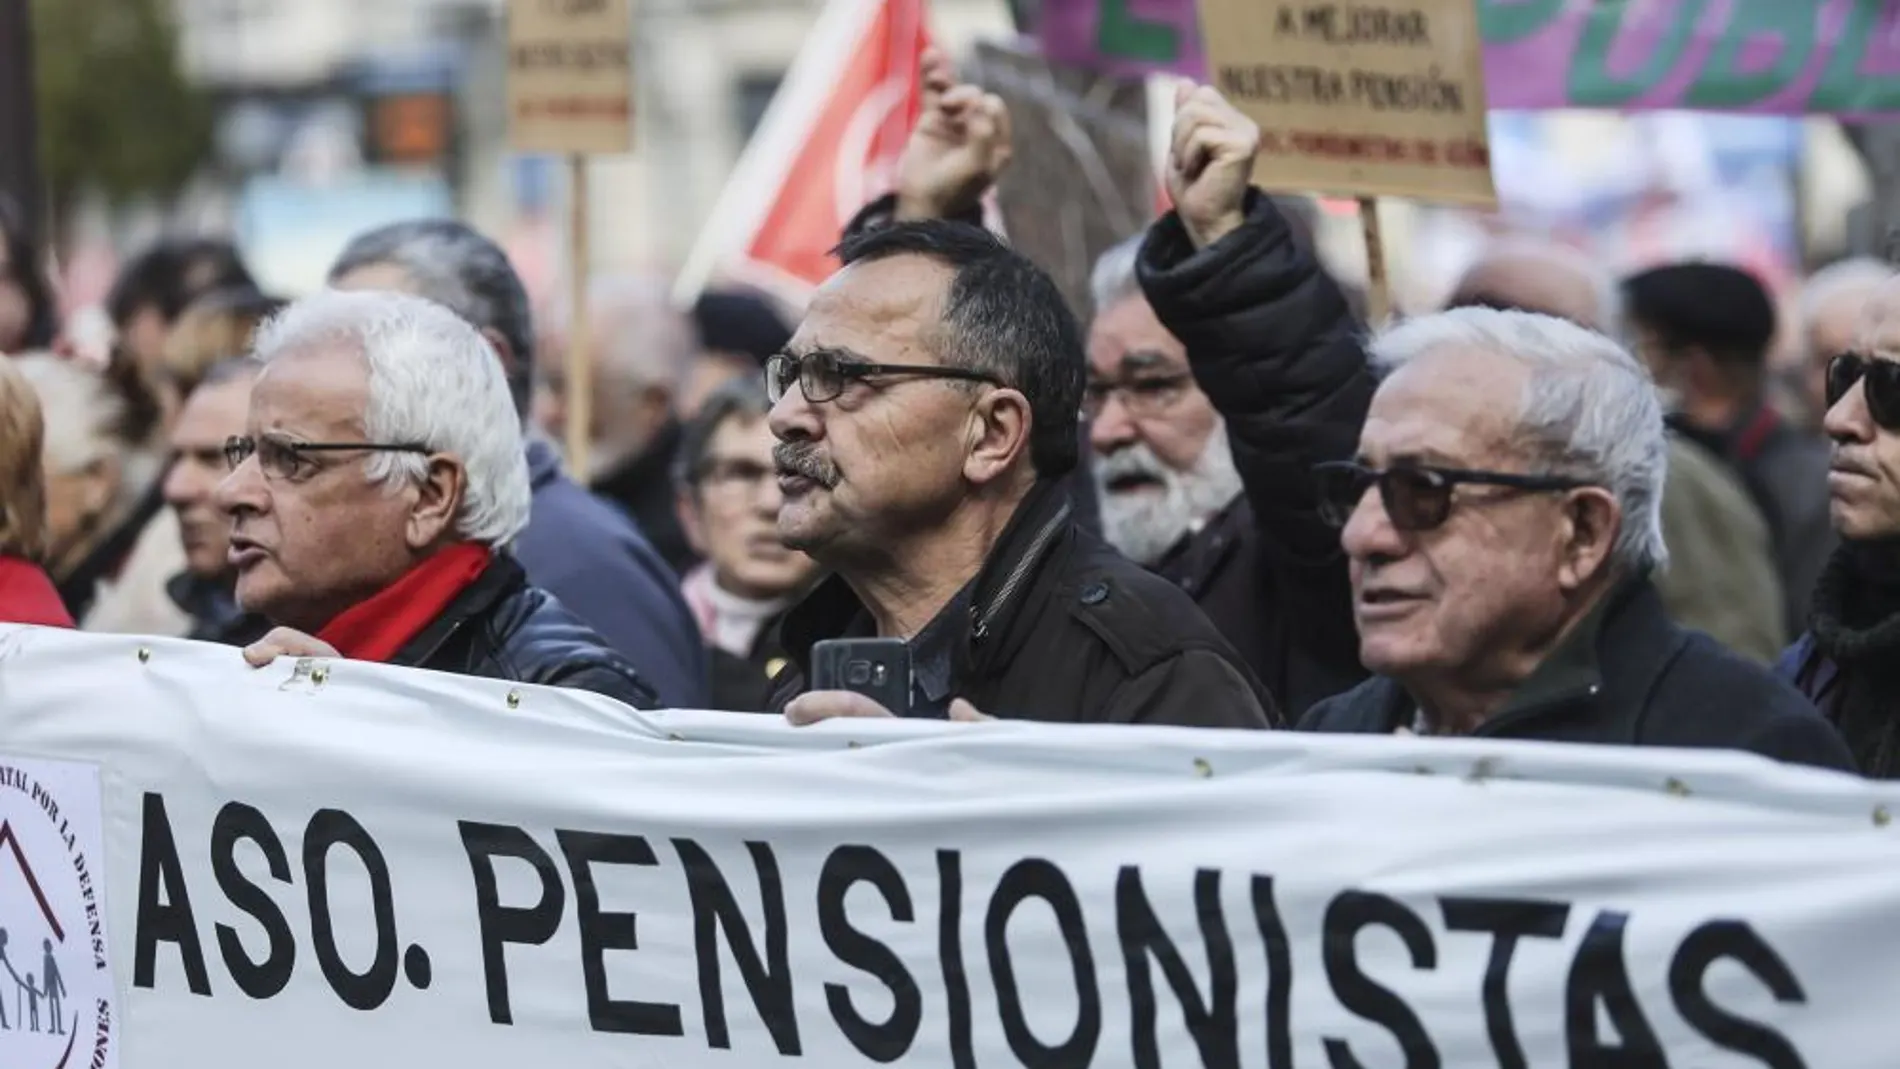 Miles de pensionistas han salido a la calle a protestar esta semana